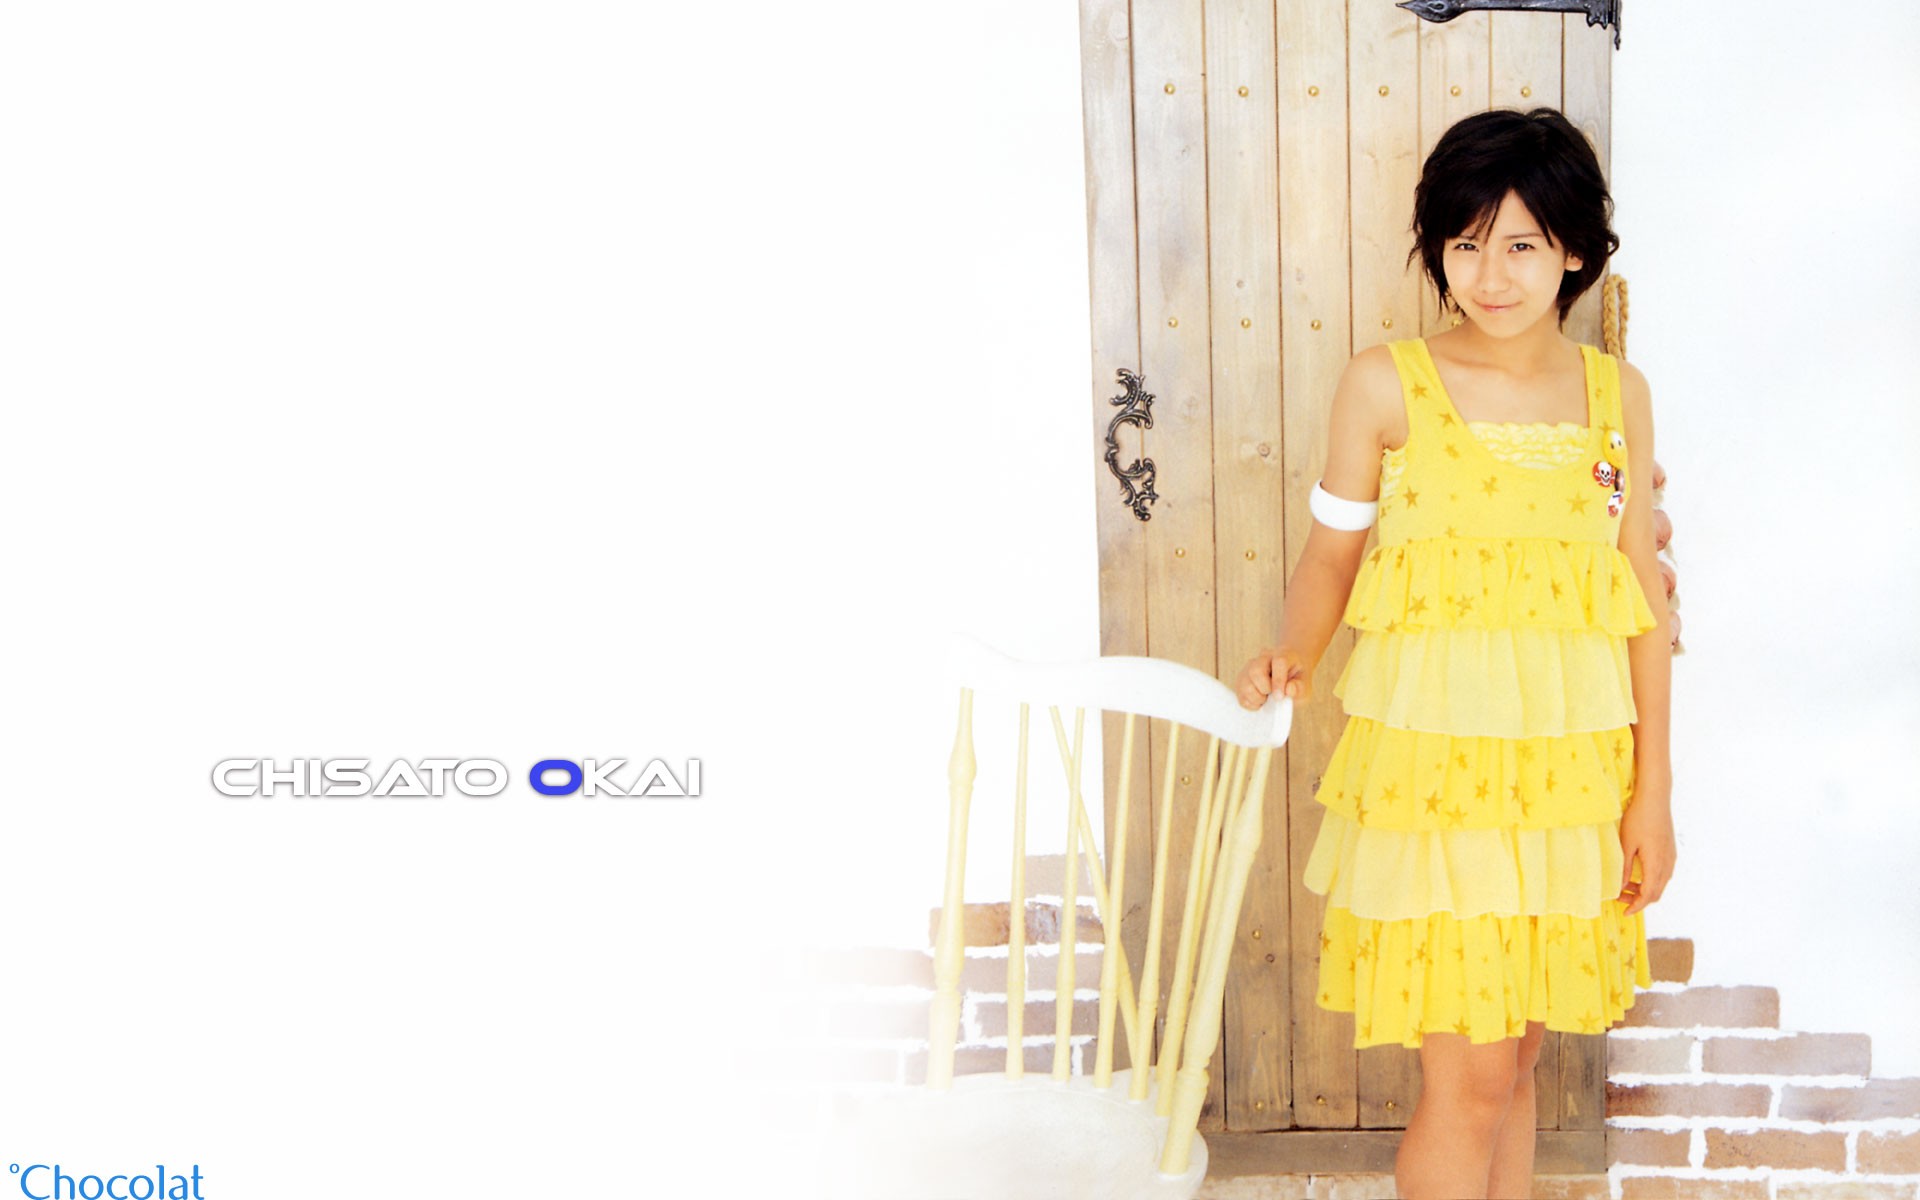 日本美少女组合Cute写真6 - 1920x1200